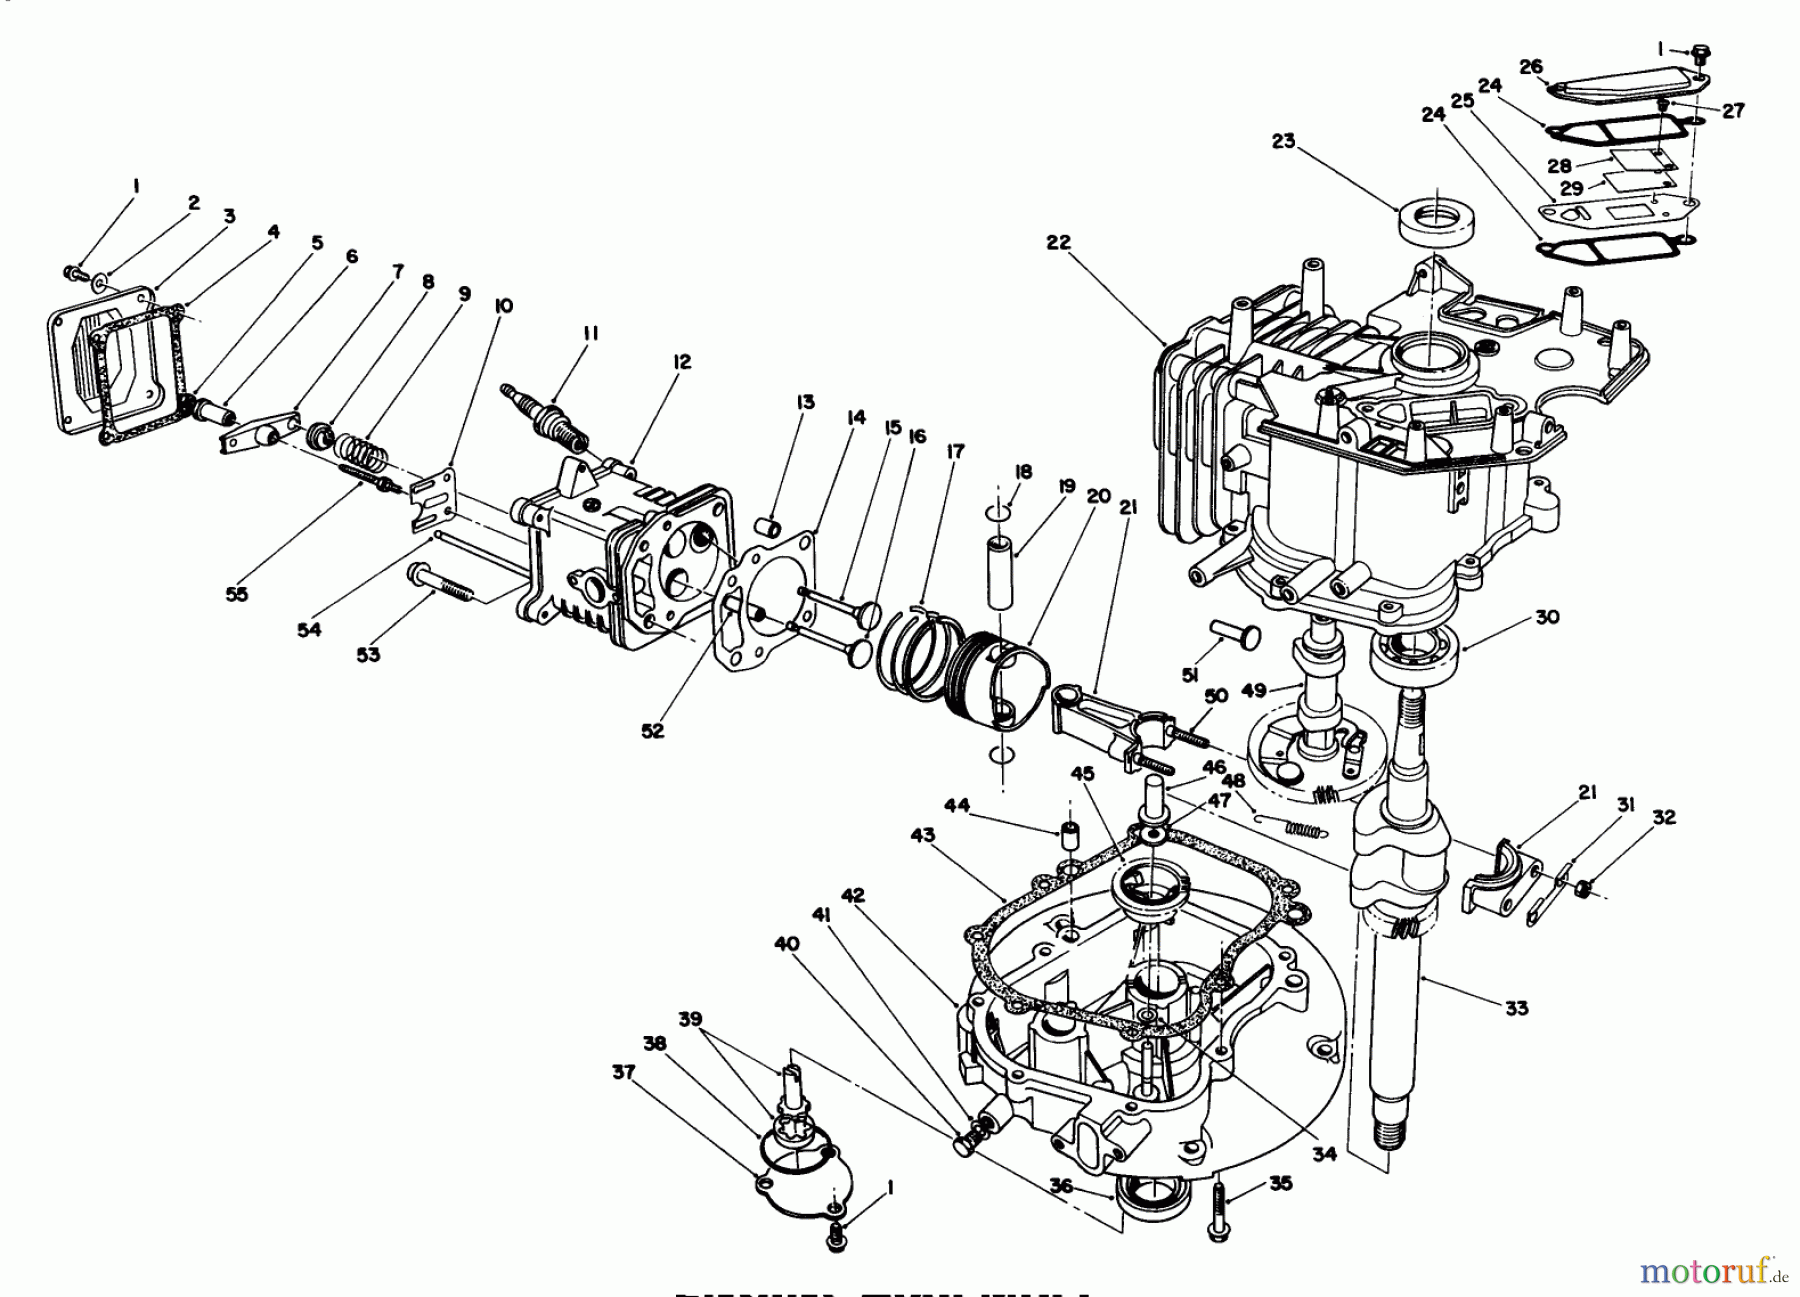  Toro Neu Mowers, Walk-Behind Seite 1 20624C - Toro Lawnmower, 1988 (8000001-8999999) ENGINE ASSEMBLY (MODEL NO. VMH7)